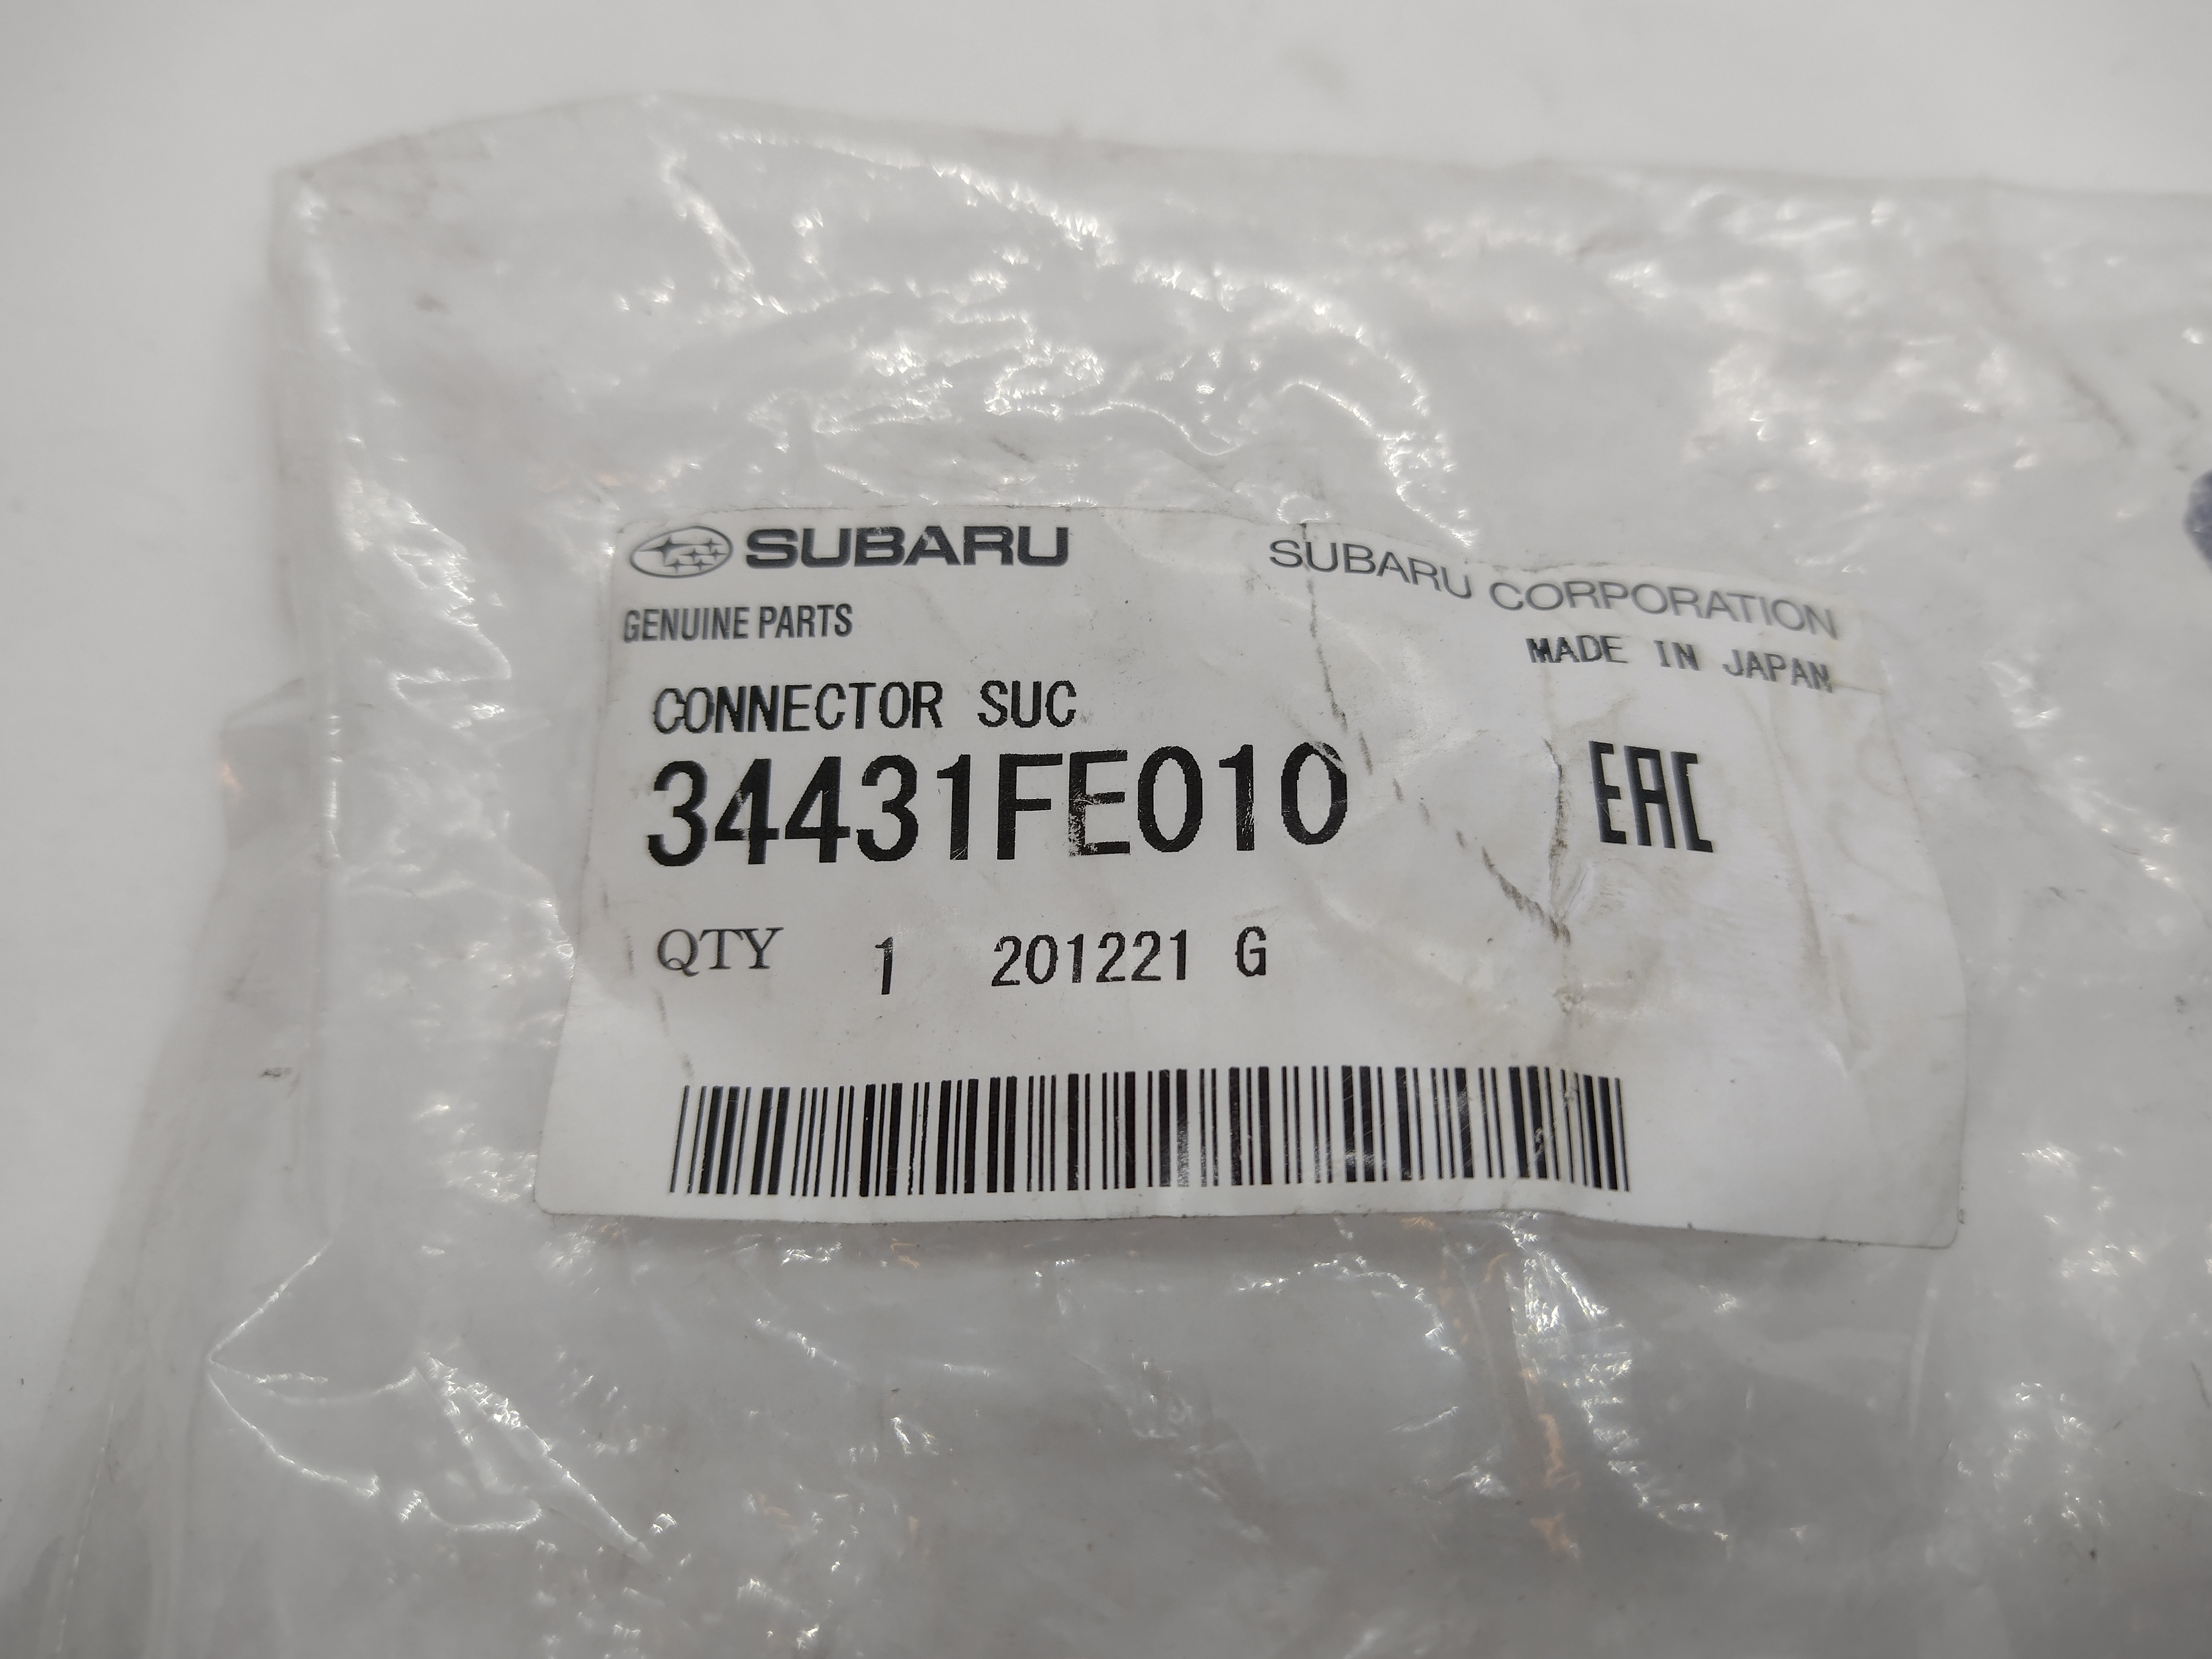 Servopumpenanschluss für Subaru Impreza 96-00 WRX STi